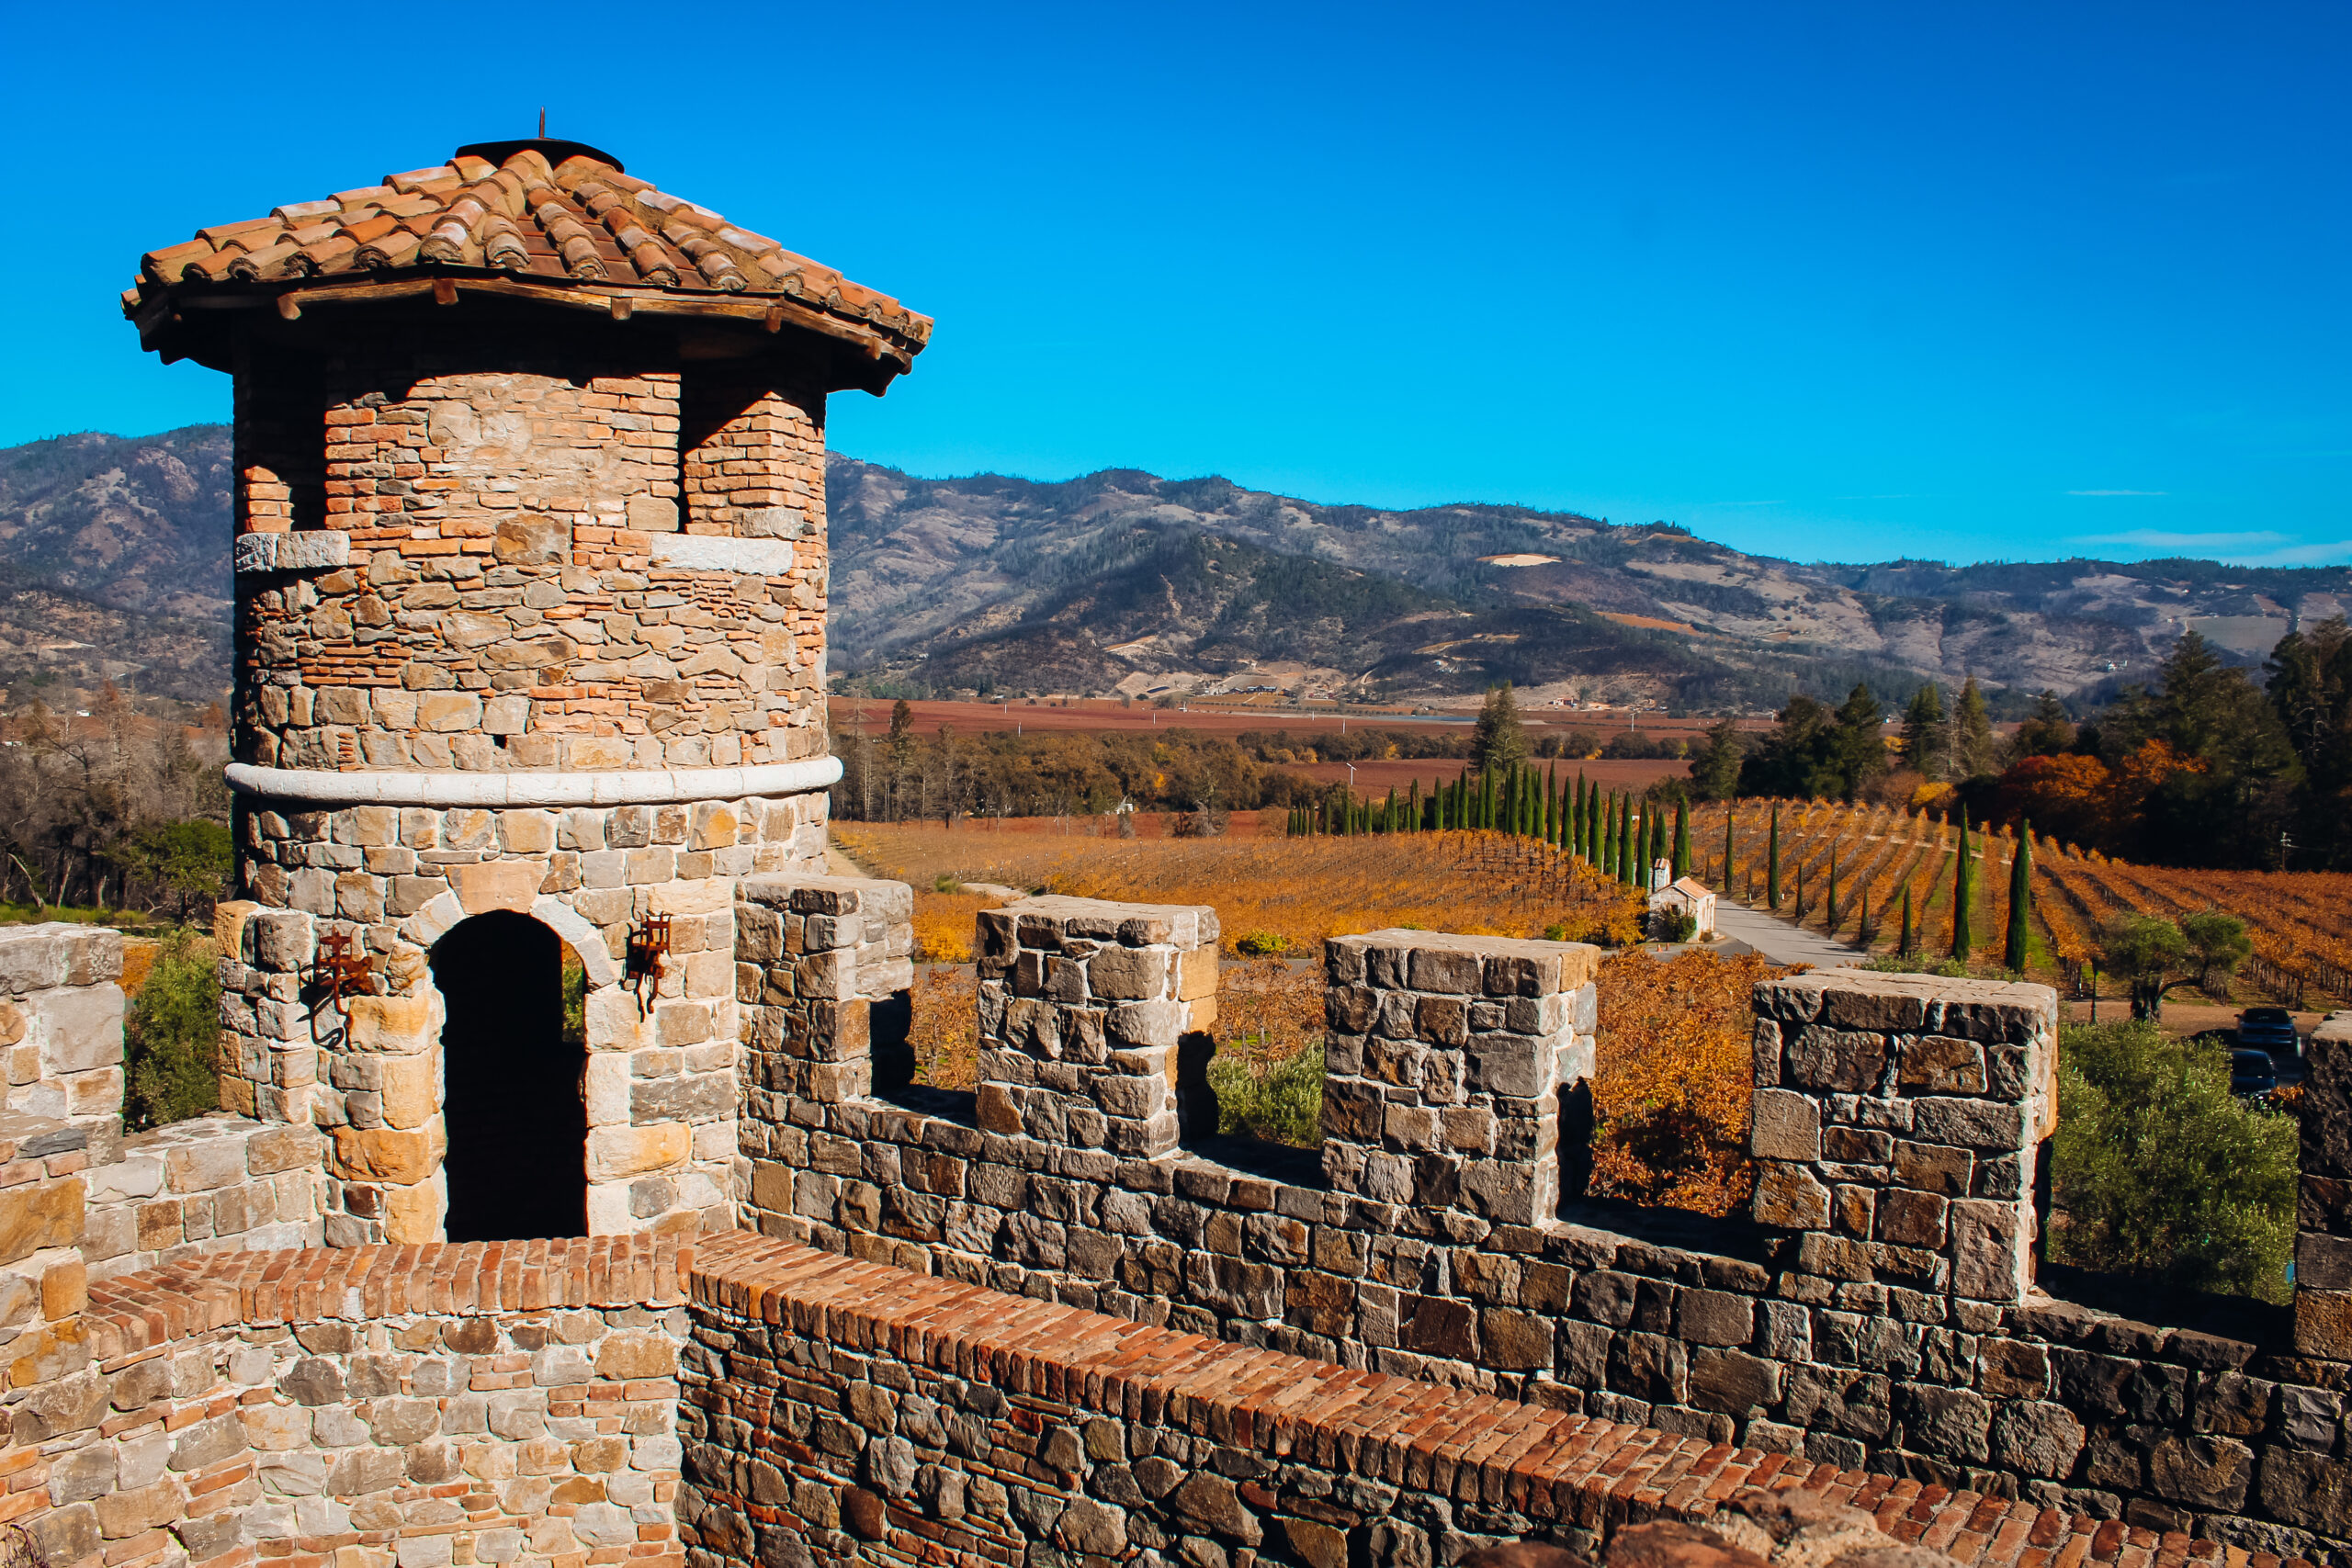 Castello Di Amorosa Winery​